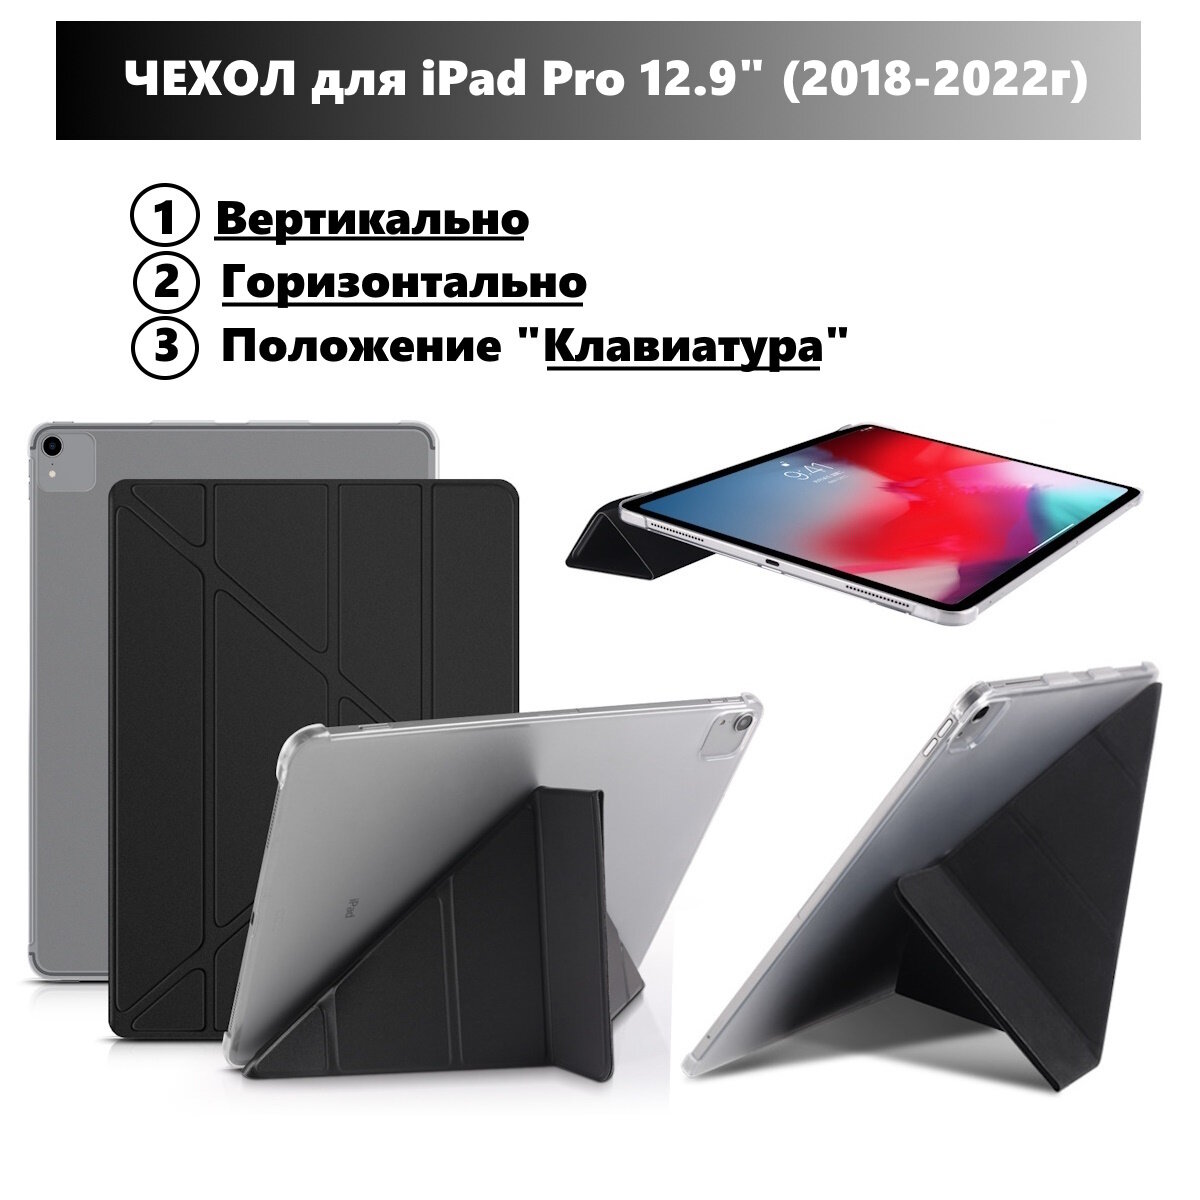 Чехол для iPad Pro 12.9 (2018-2022гг) горизонтальный и вертикальный умный чехол-подставка для iPad с местом для стилуса Сиреневый